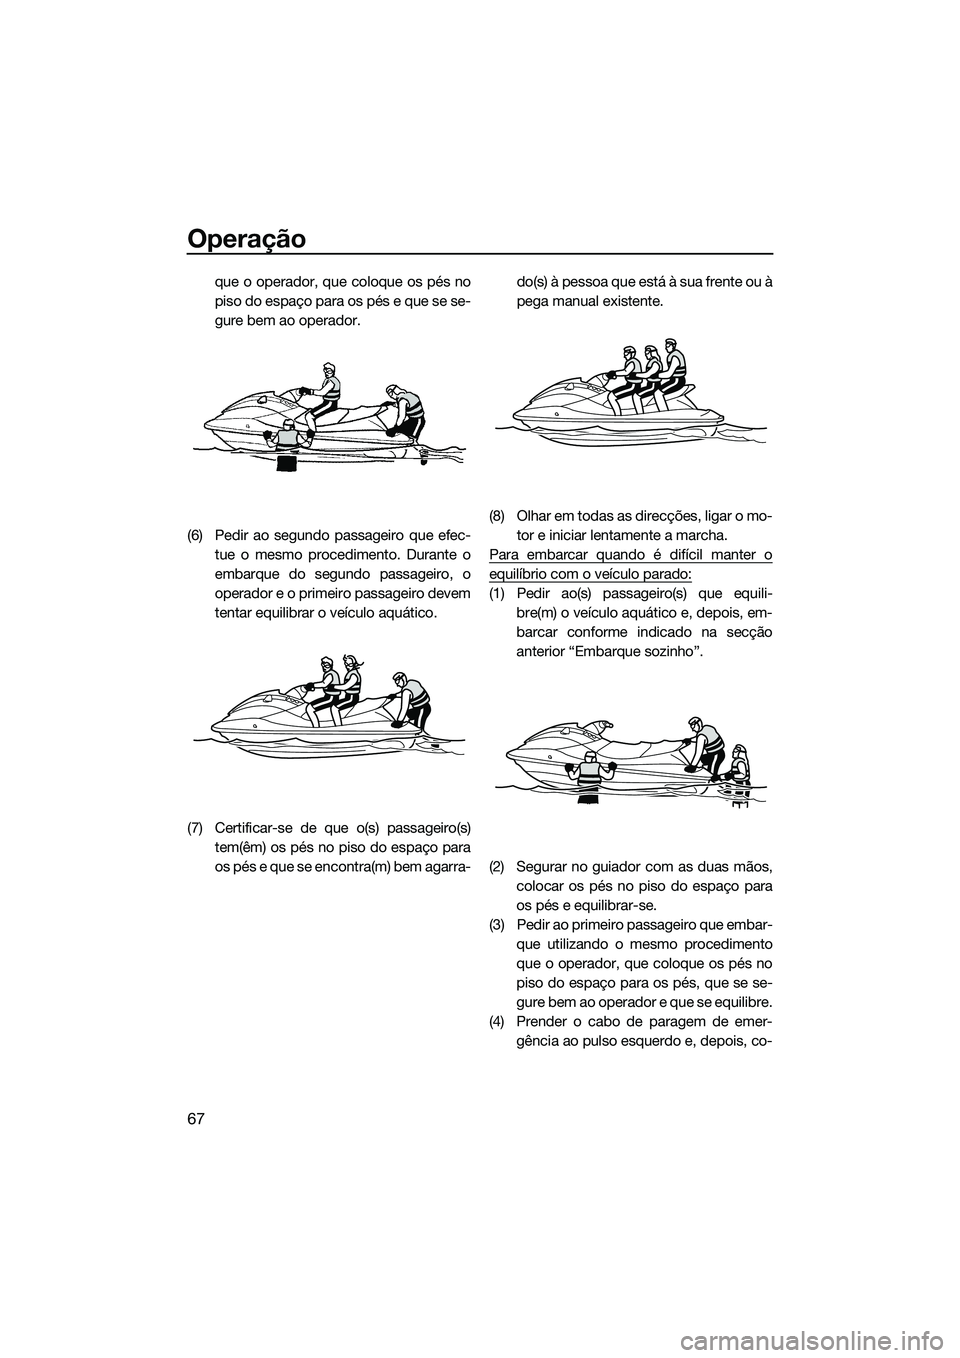 YAMAHA V1 2015  Manual de utilização (in Portuguese) Operação
67
que o operador, que coloque os pés no
piso do espaço para os pés e que se se-
gure bem ao operador.
(6) Pedir ao segundo passageiro que efec- tue o mesmo procedimento. Durante o
embar